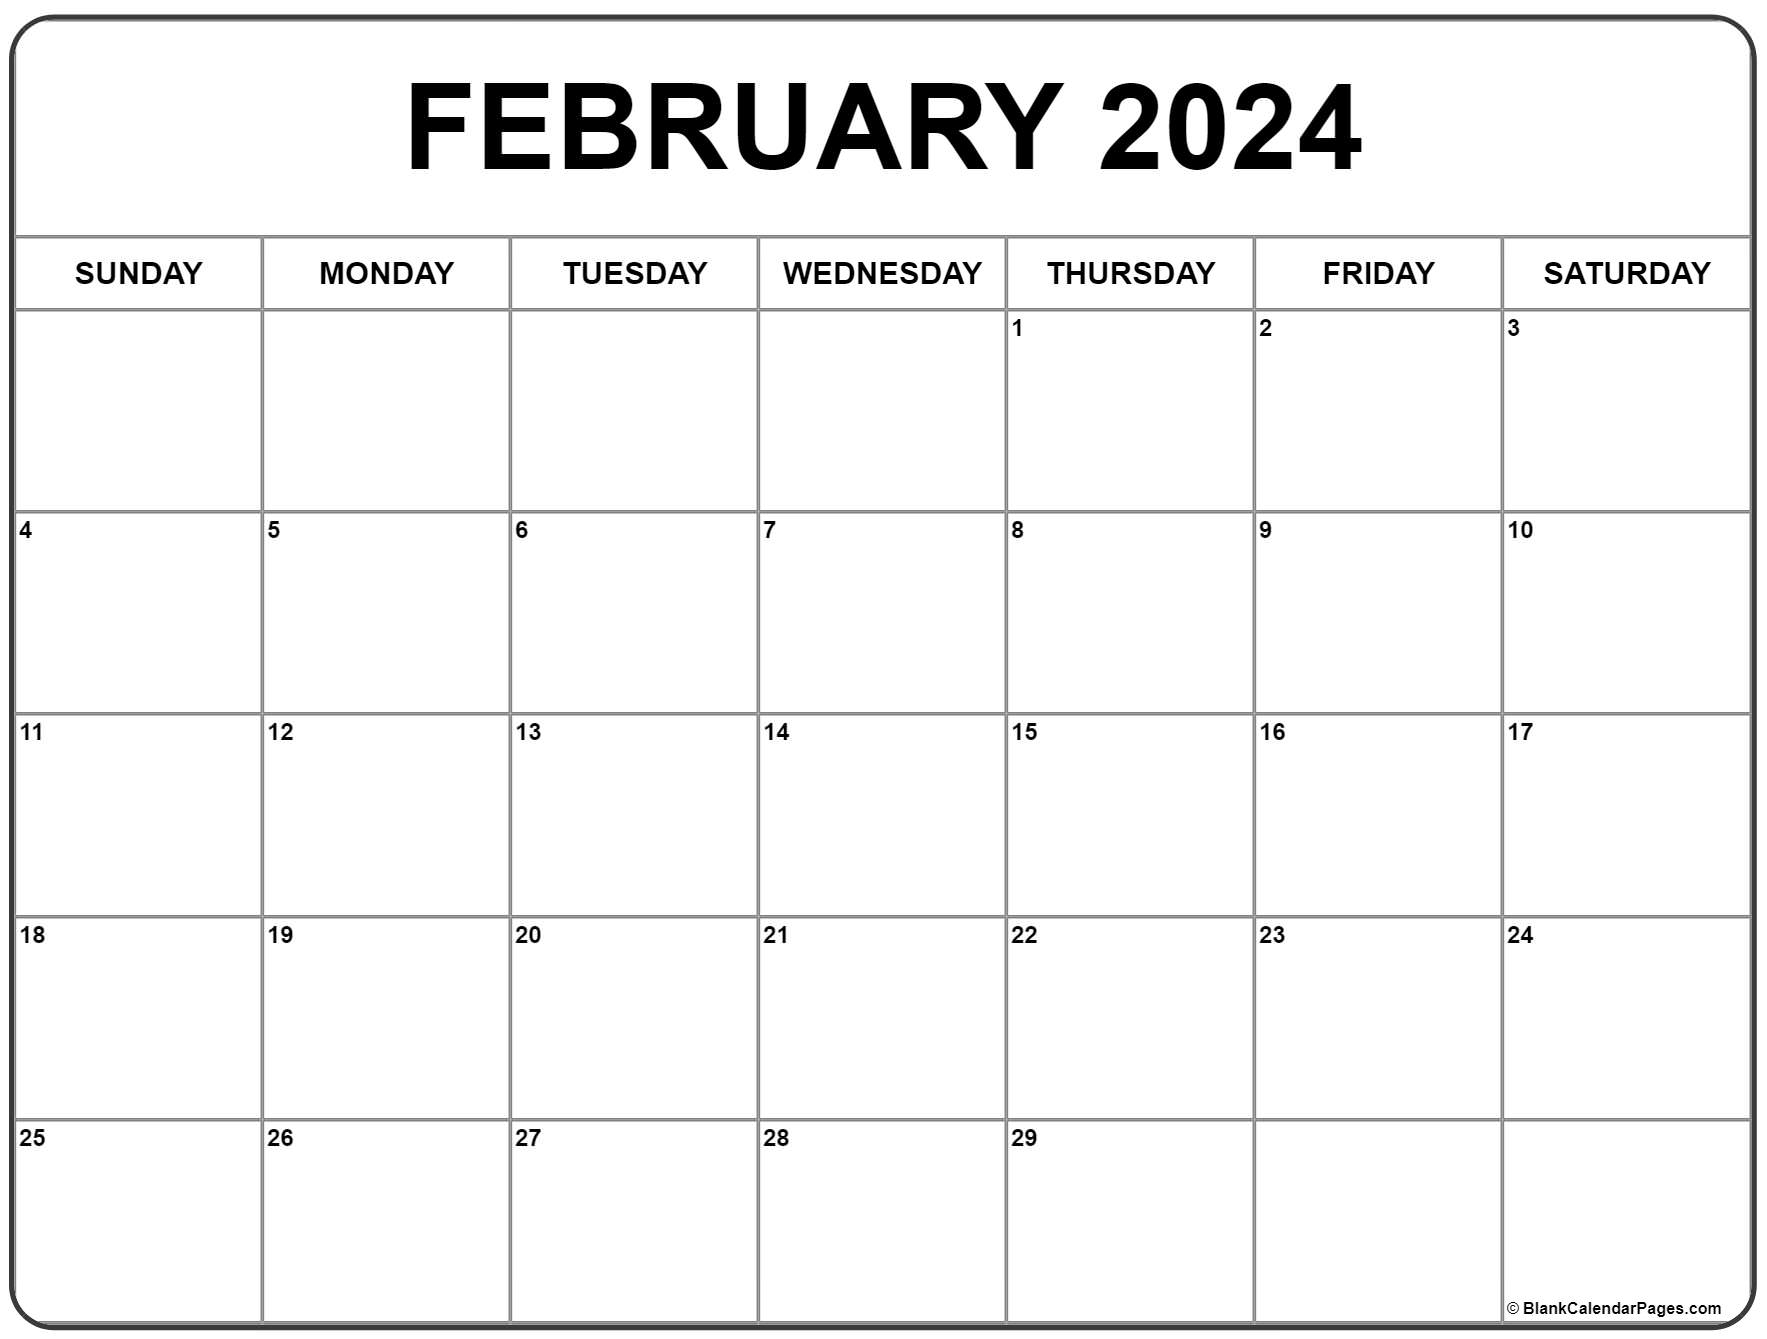 February 2024 Calendar | Free Printable Calendar for Printable February Calendar 2024 Free